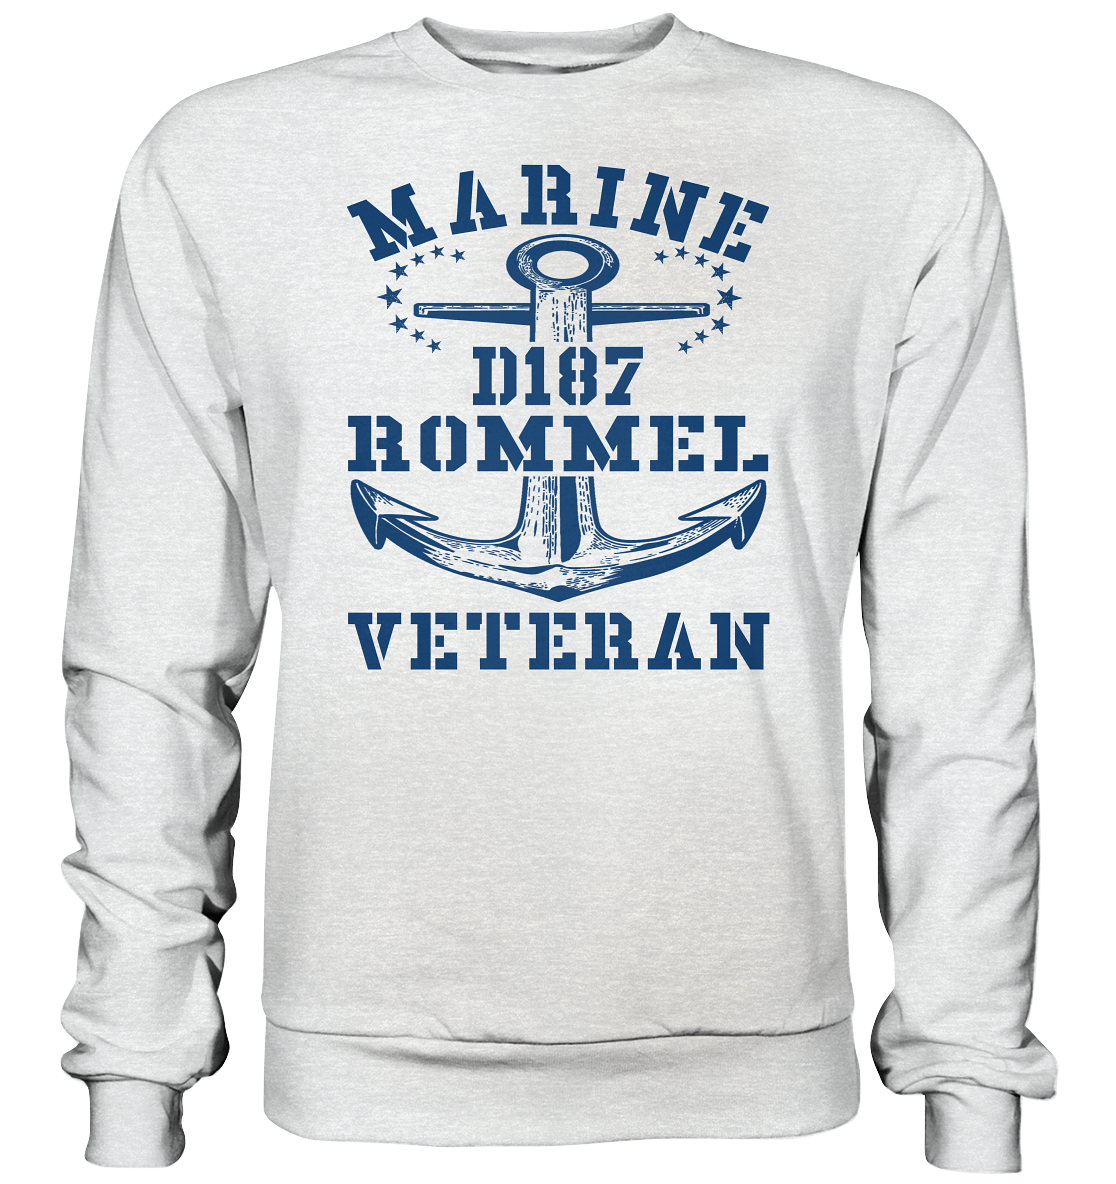 Zerstörer D187 ROMMEL Marine Veteran - Premium Sweatshirt